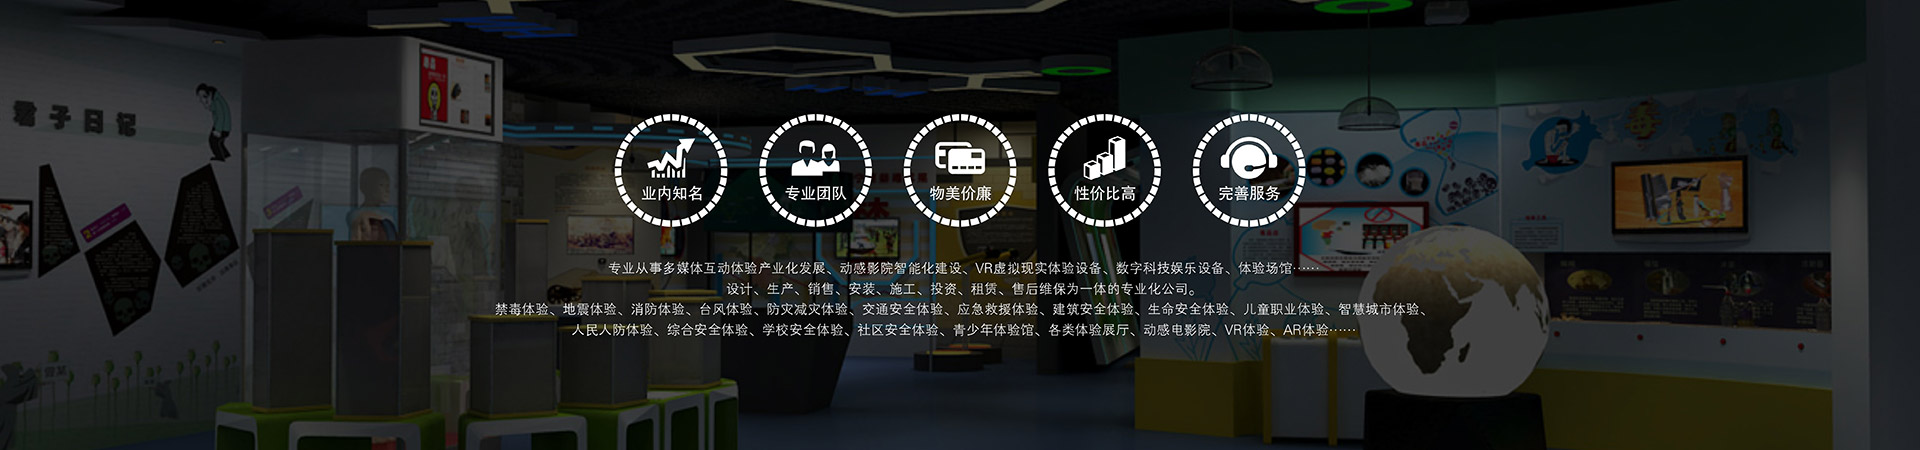 模拟安全VR赛车体验模拟安全VR加特林模拟安全禁毒互动点播系统模拟安全环幕4D动感影院系统模拟安全触摸屏互动系统